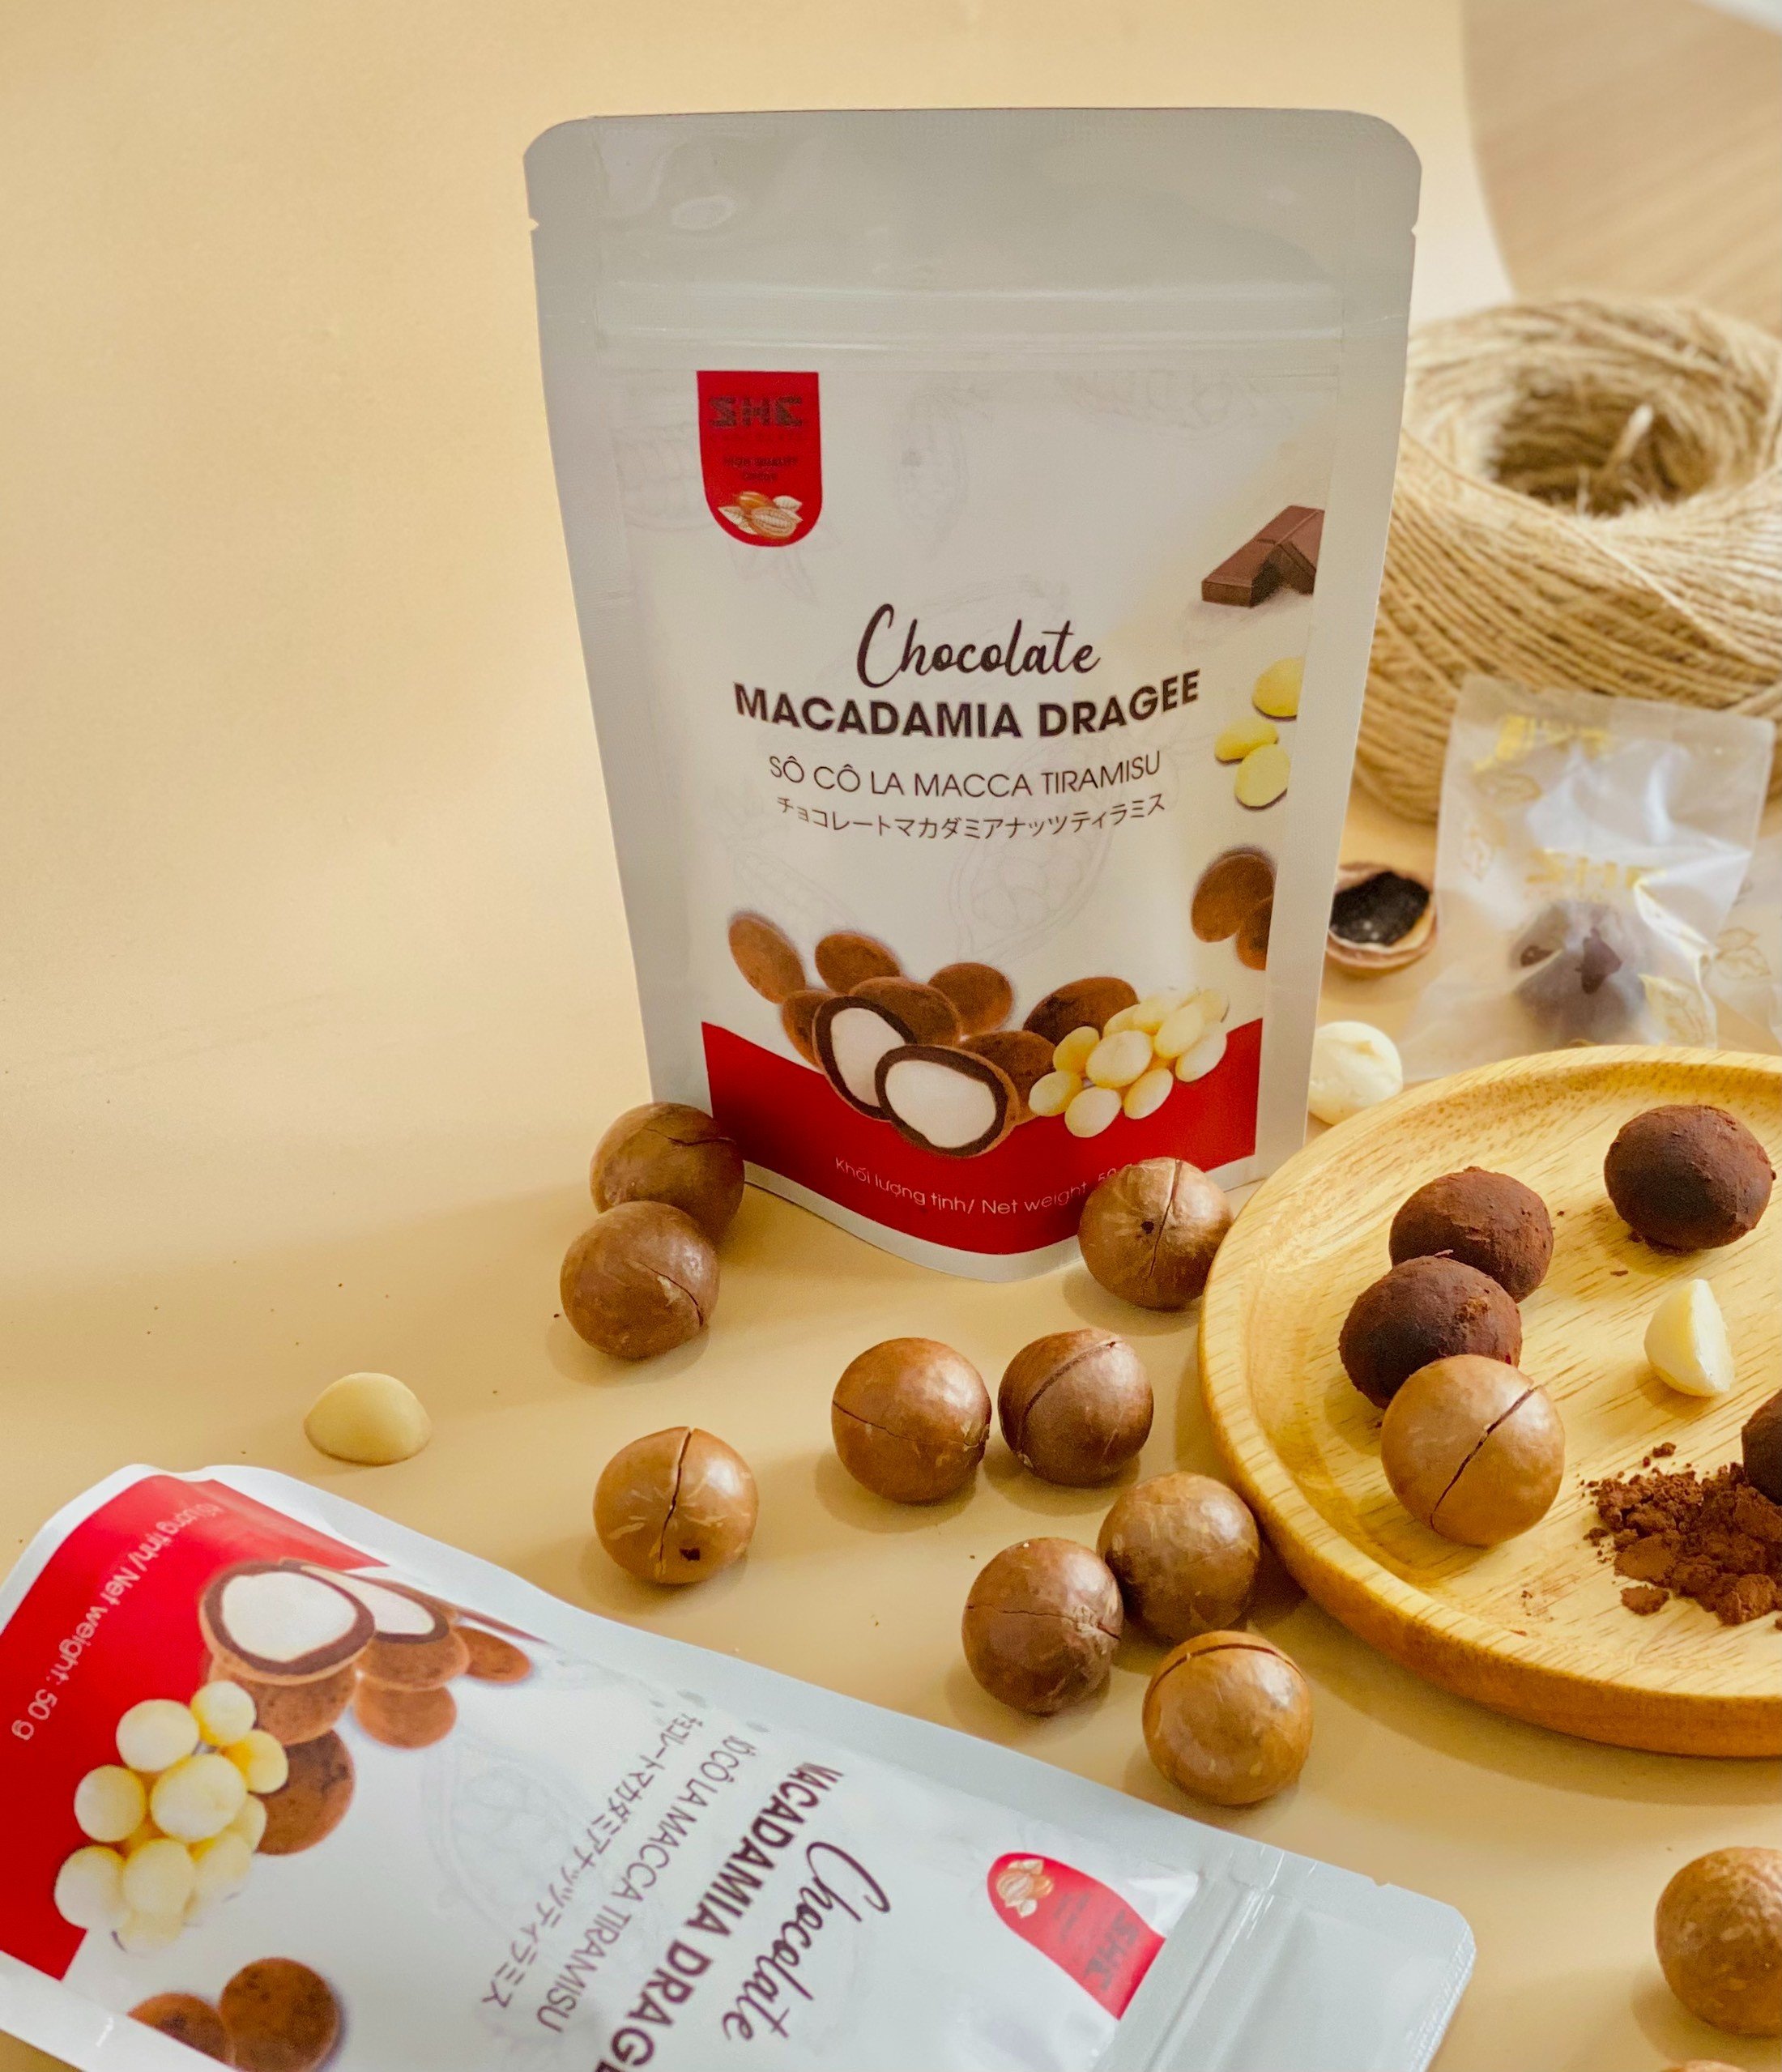 Socola Macca Tiramisu - Túi 50g - SHE Chocolate - Tốt cho sức khỏe - Quà tặng người thân, dịp lễ, thích hợp ăn vặt